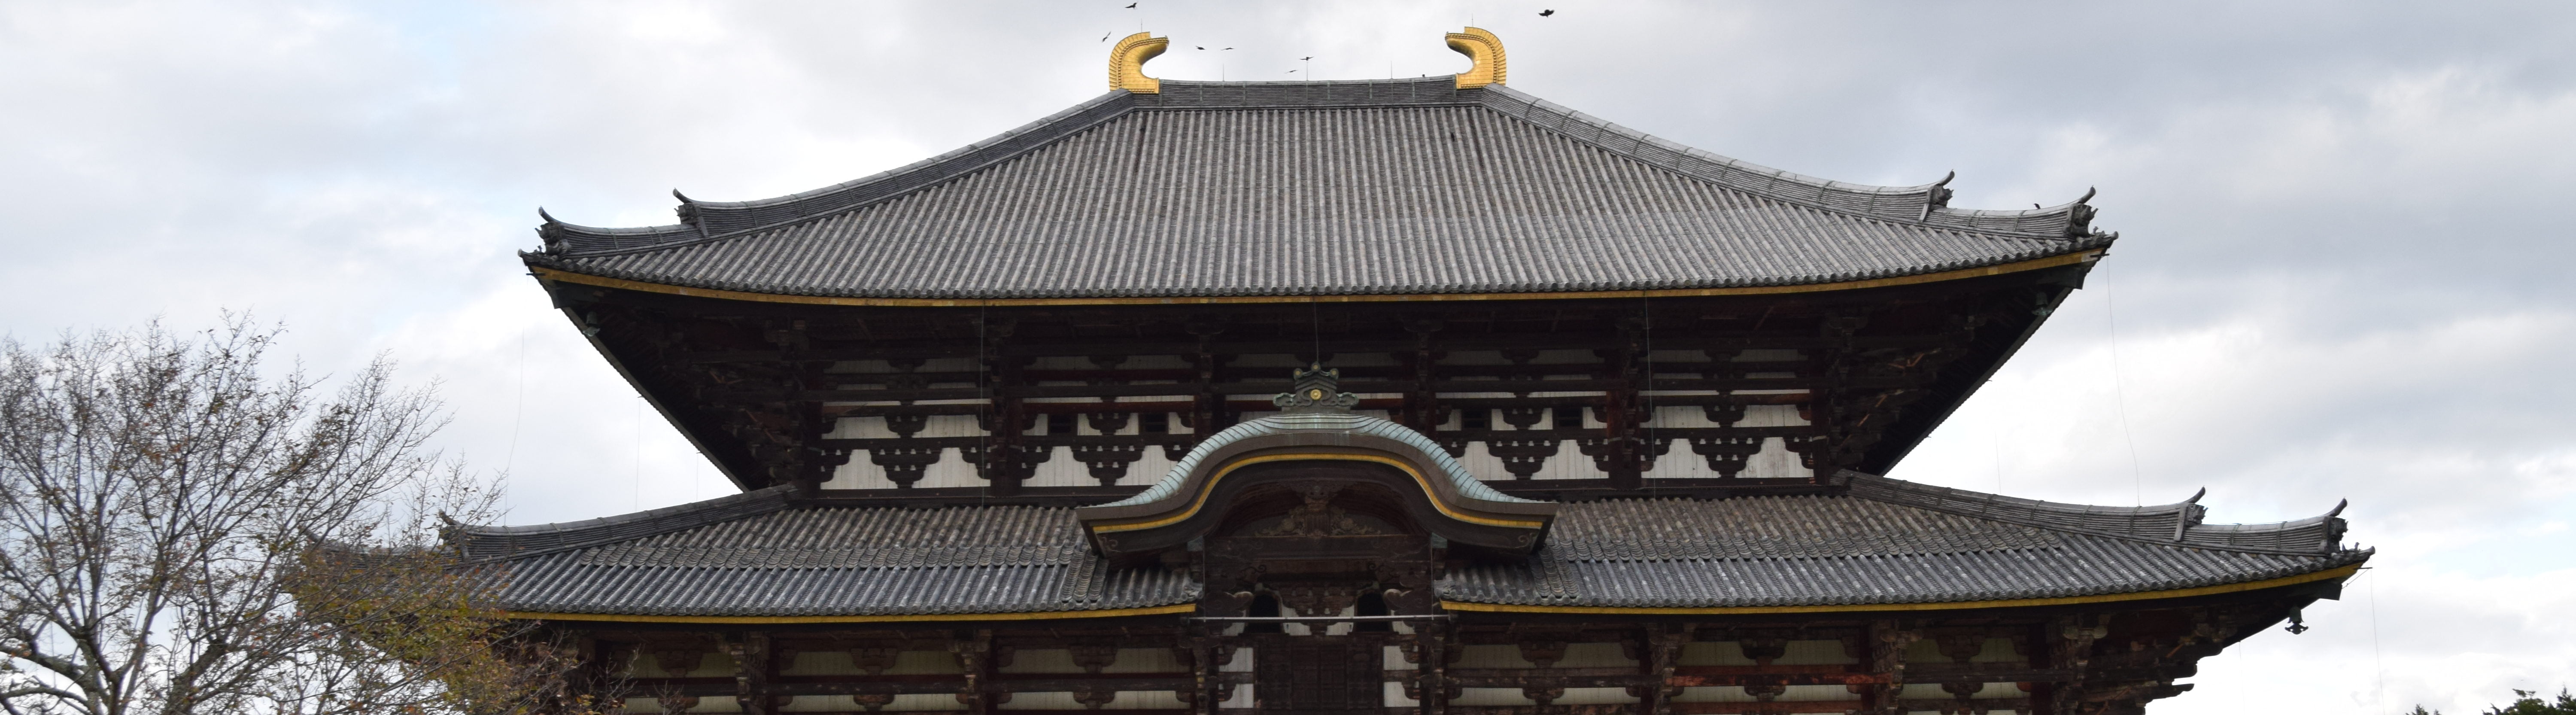 De heilige herten van Nara